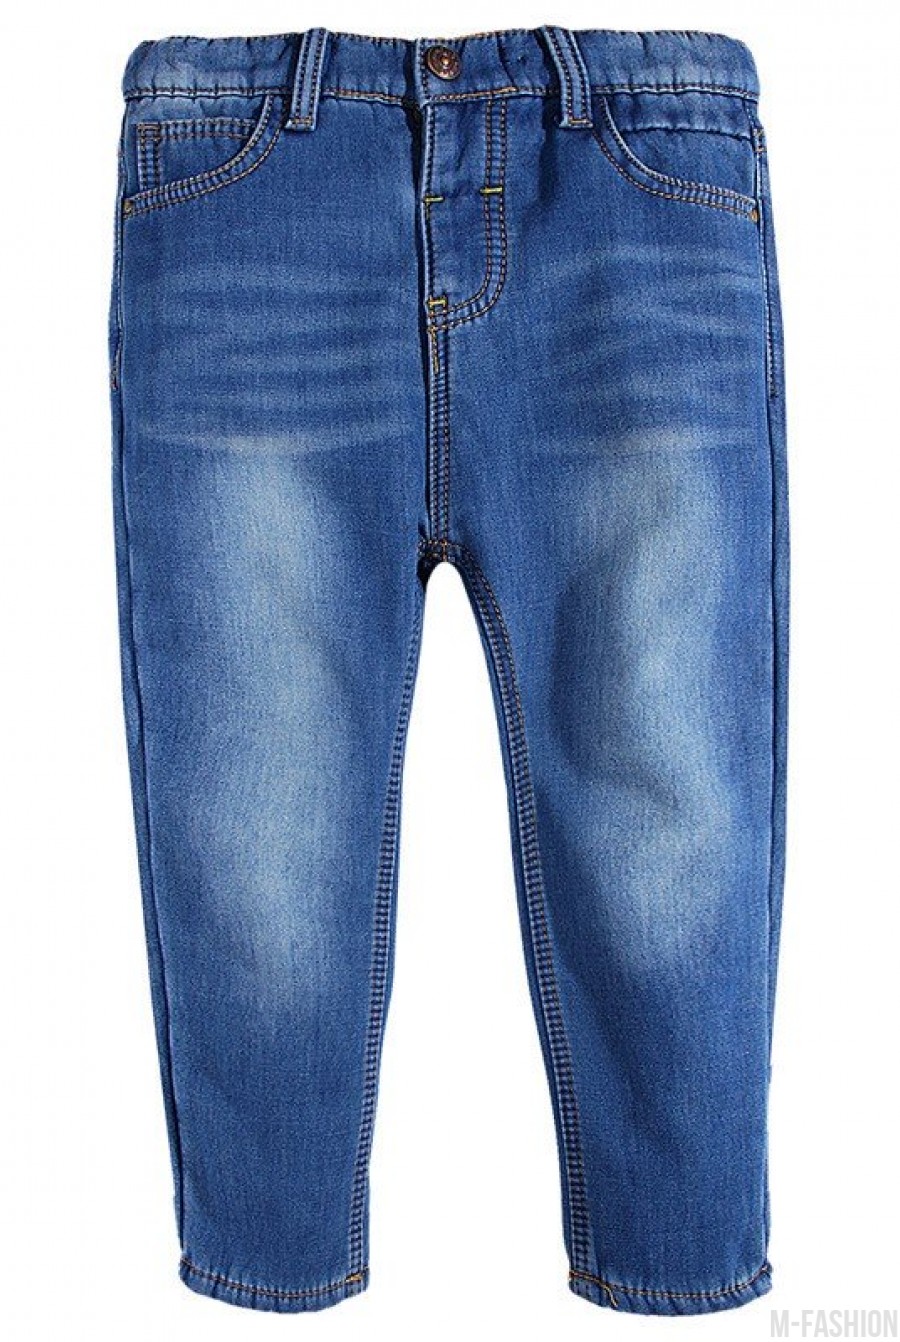 Синие утепленные джинсы на флисе с потертостями - Фото 1